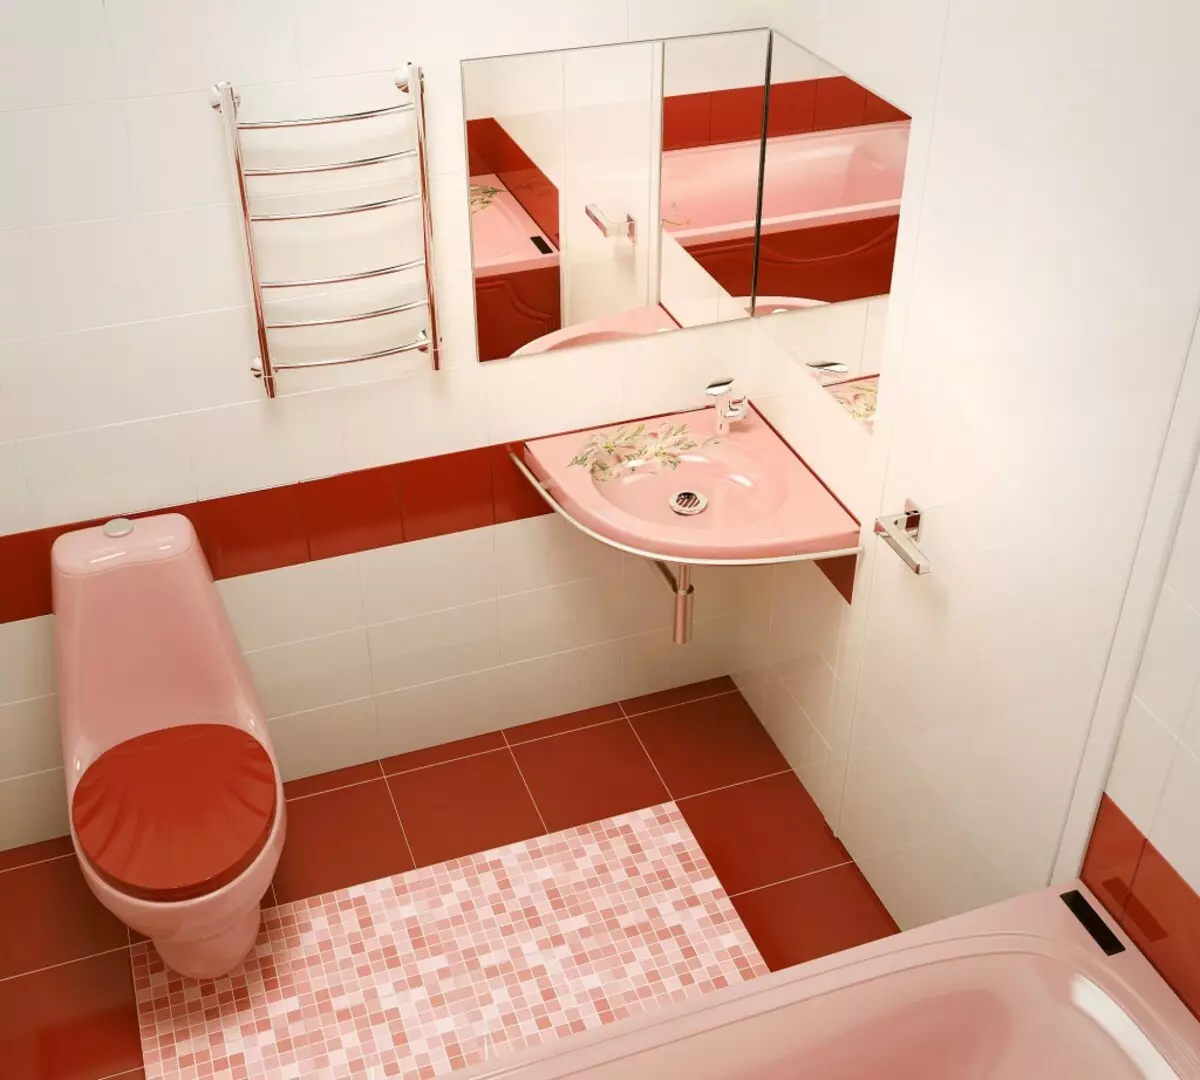 עיצוב אמבטיה בשילוב עם שירותים מרובע 3. M (76 תמונות): עיצוב פנים חדר אמבטיה עם מכונת כביסה, הנחת חדר קטן 10068_61